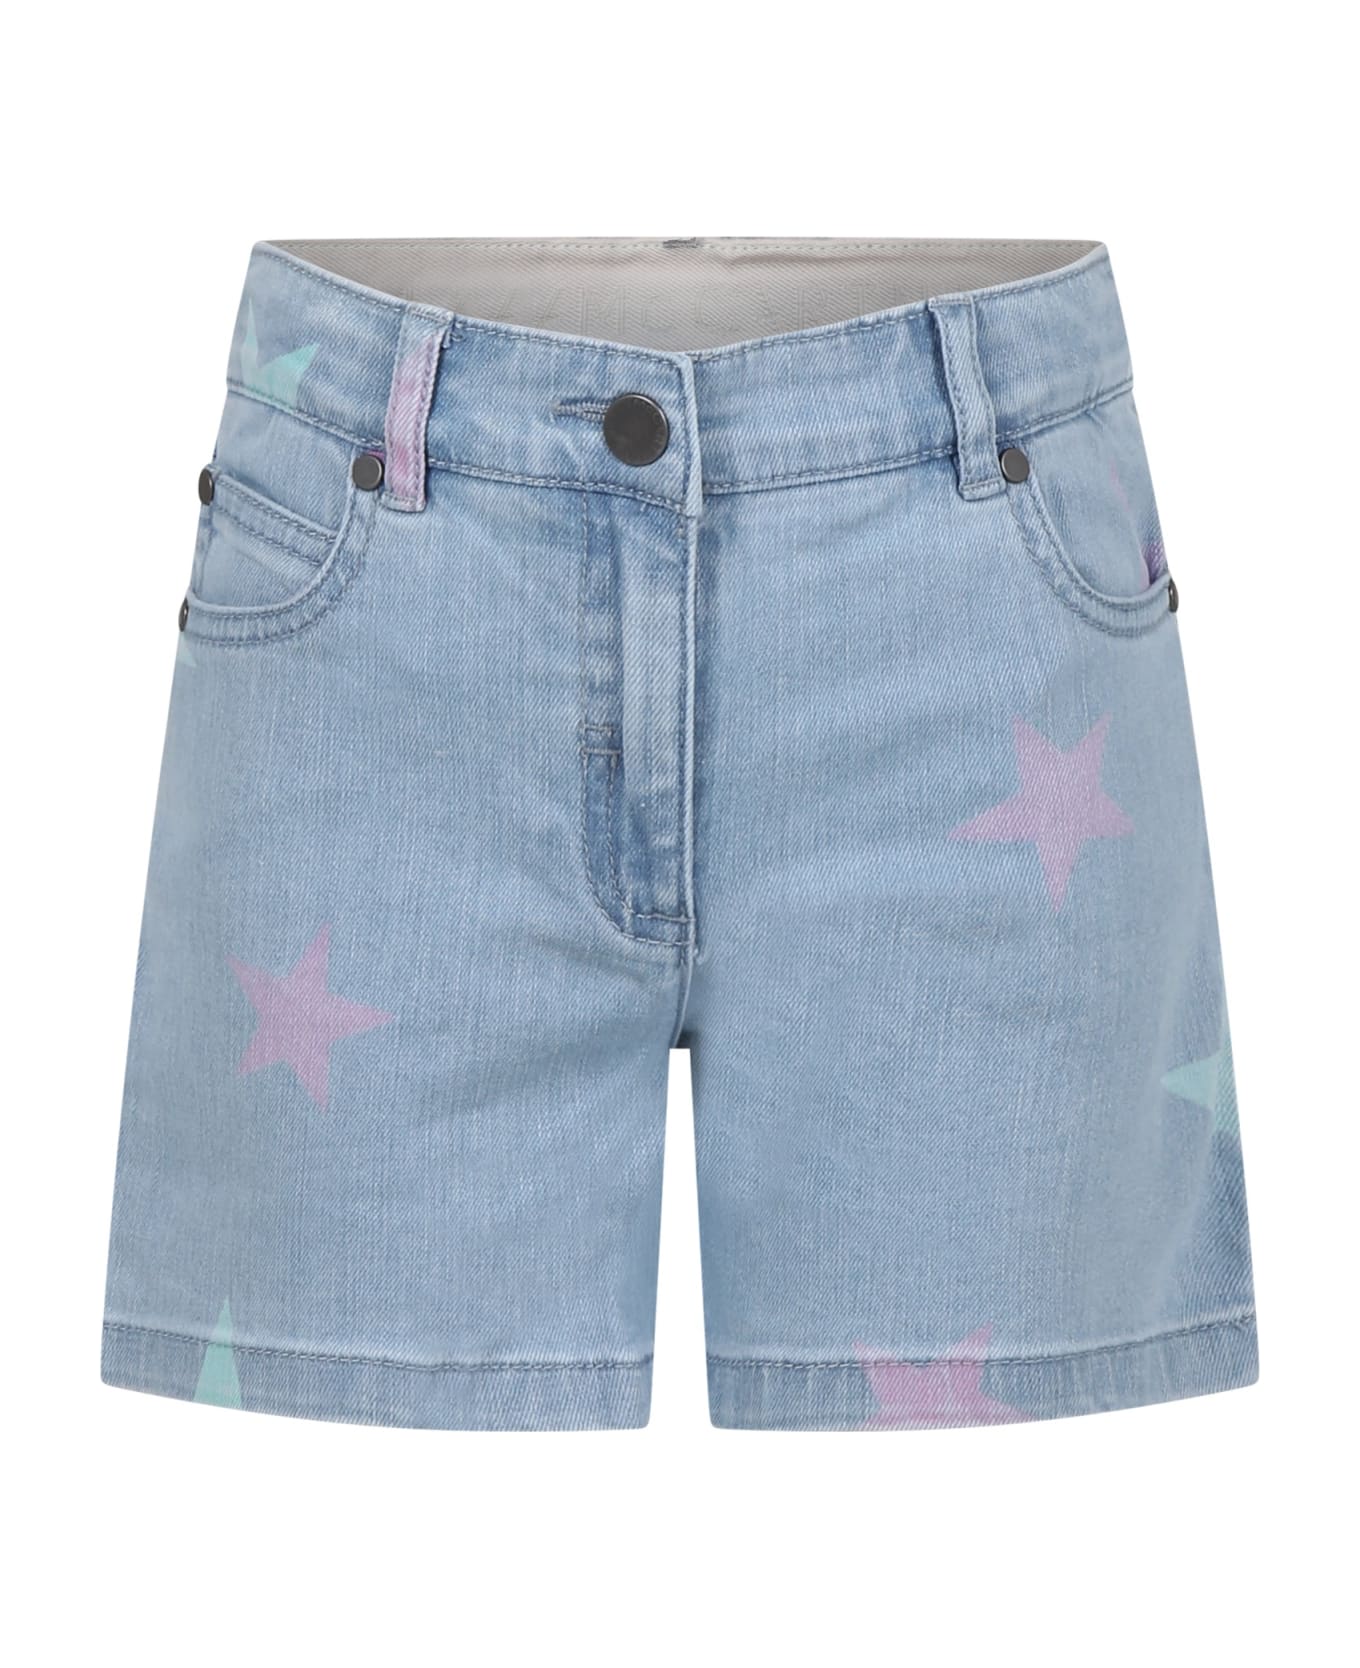 Stella McCartney Kids Denim Shorts For Girl With All-over Stars - Denim